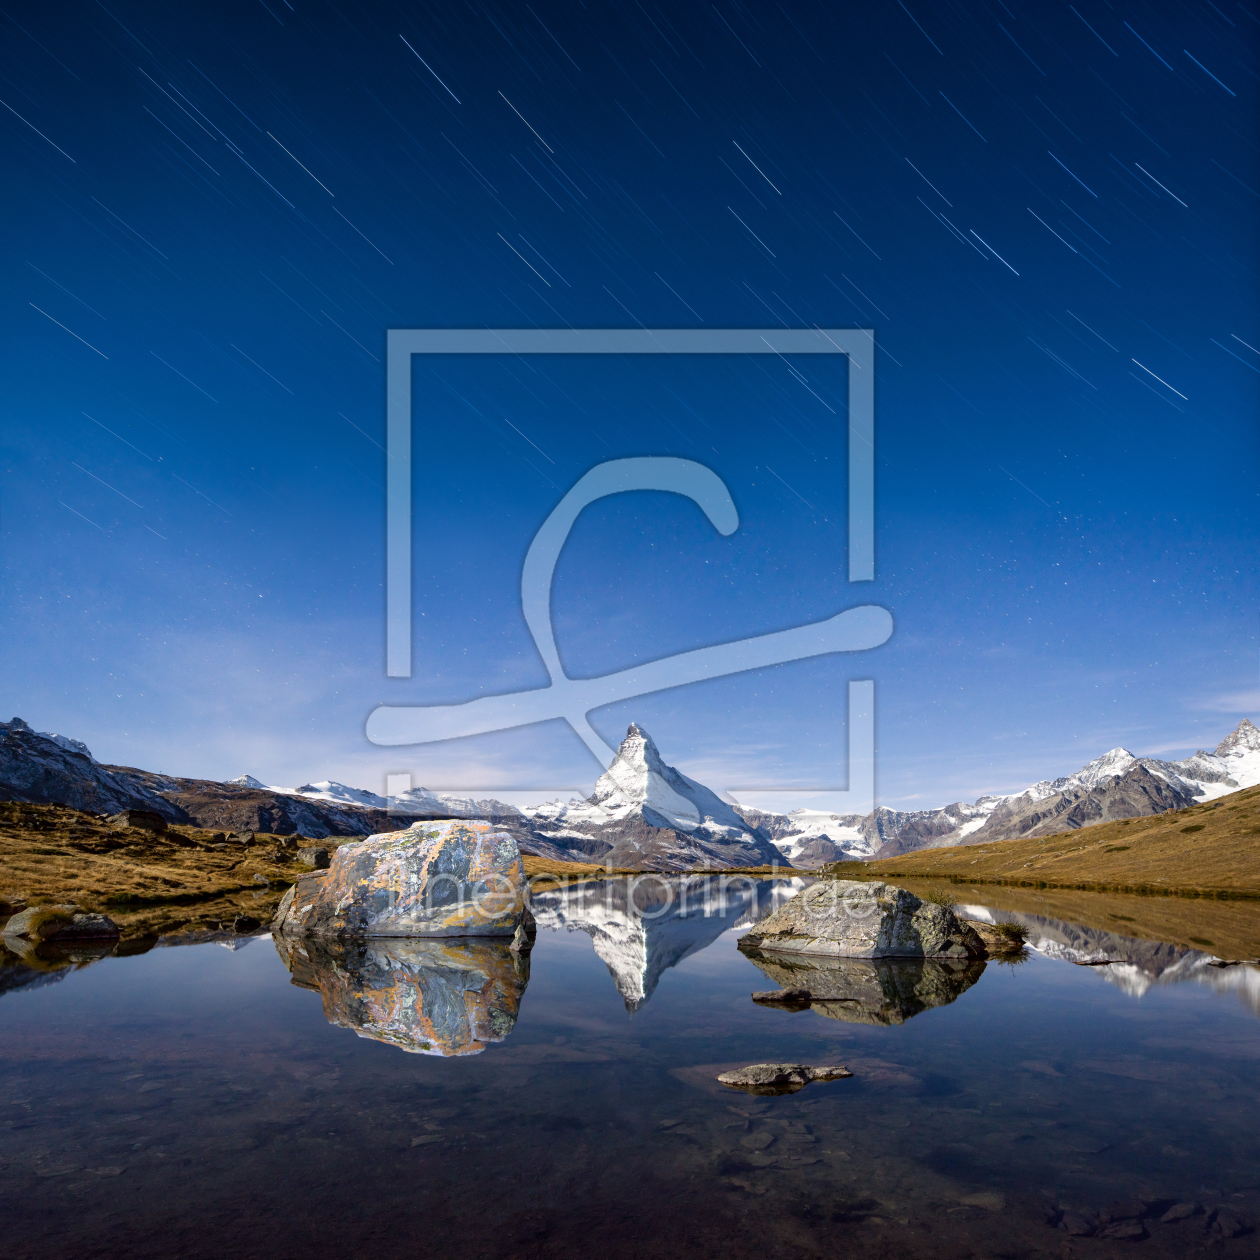 Bild-Nr.: 11807586 Stellisee und Matterhorn mit Sternenhimmel erstellt von eyetronic